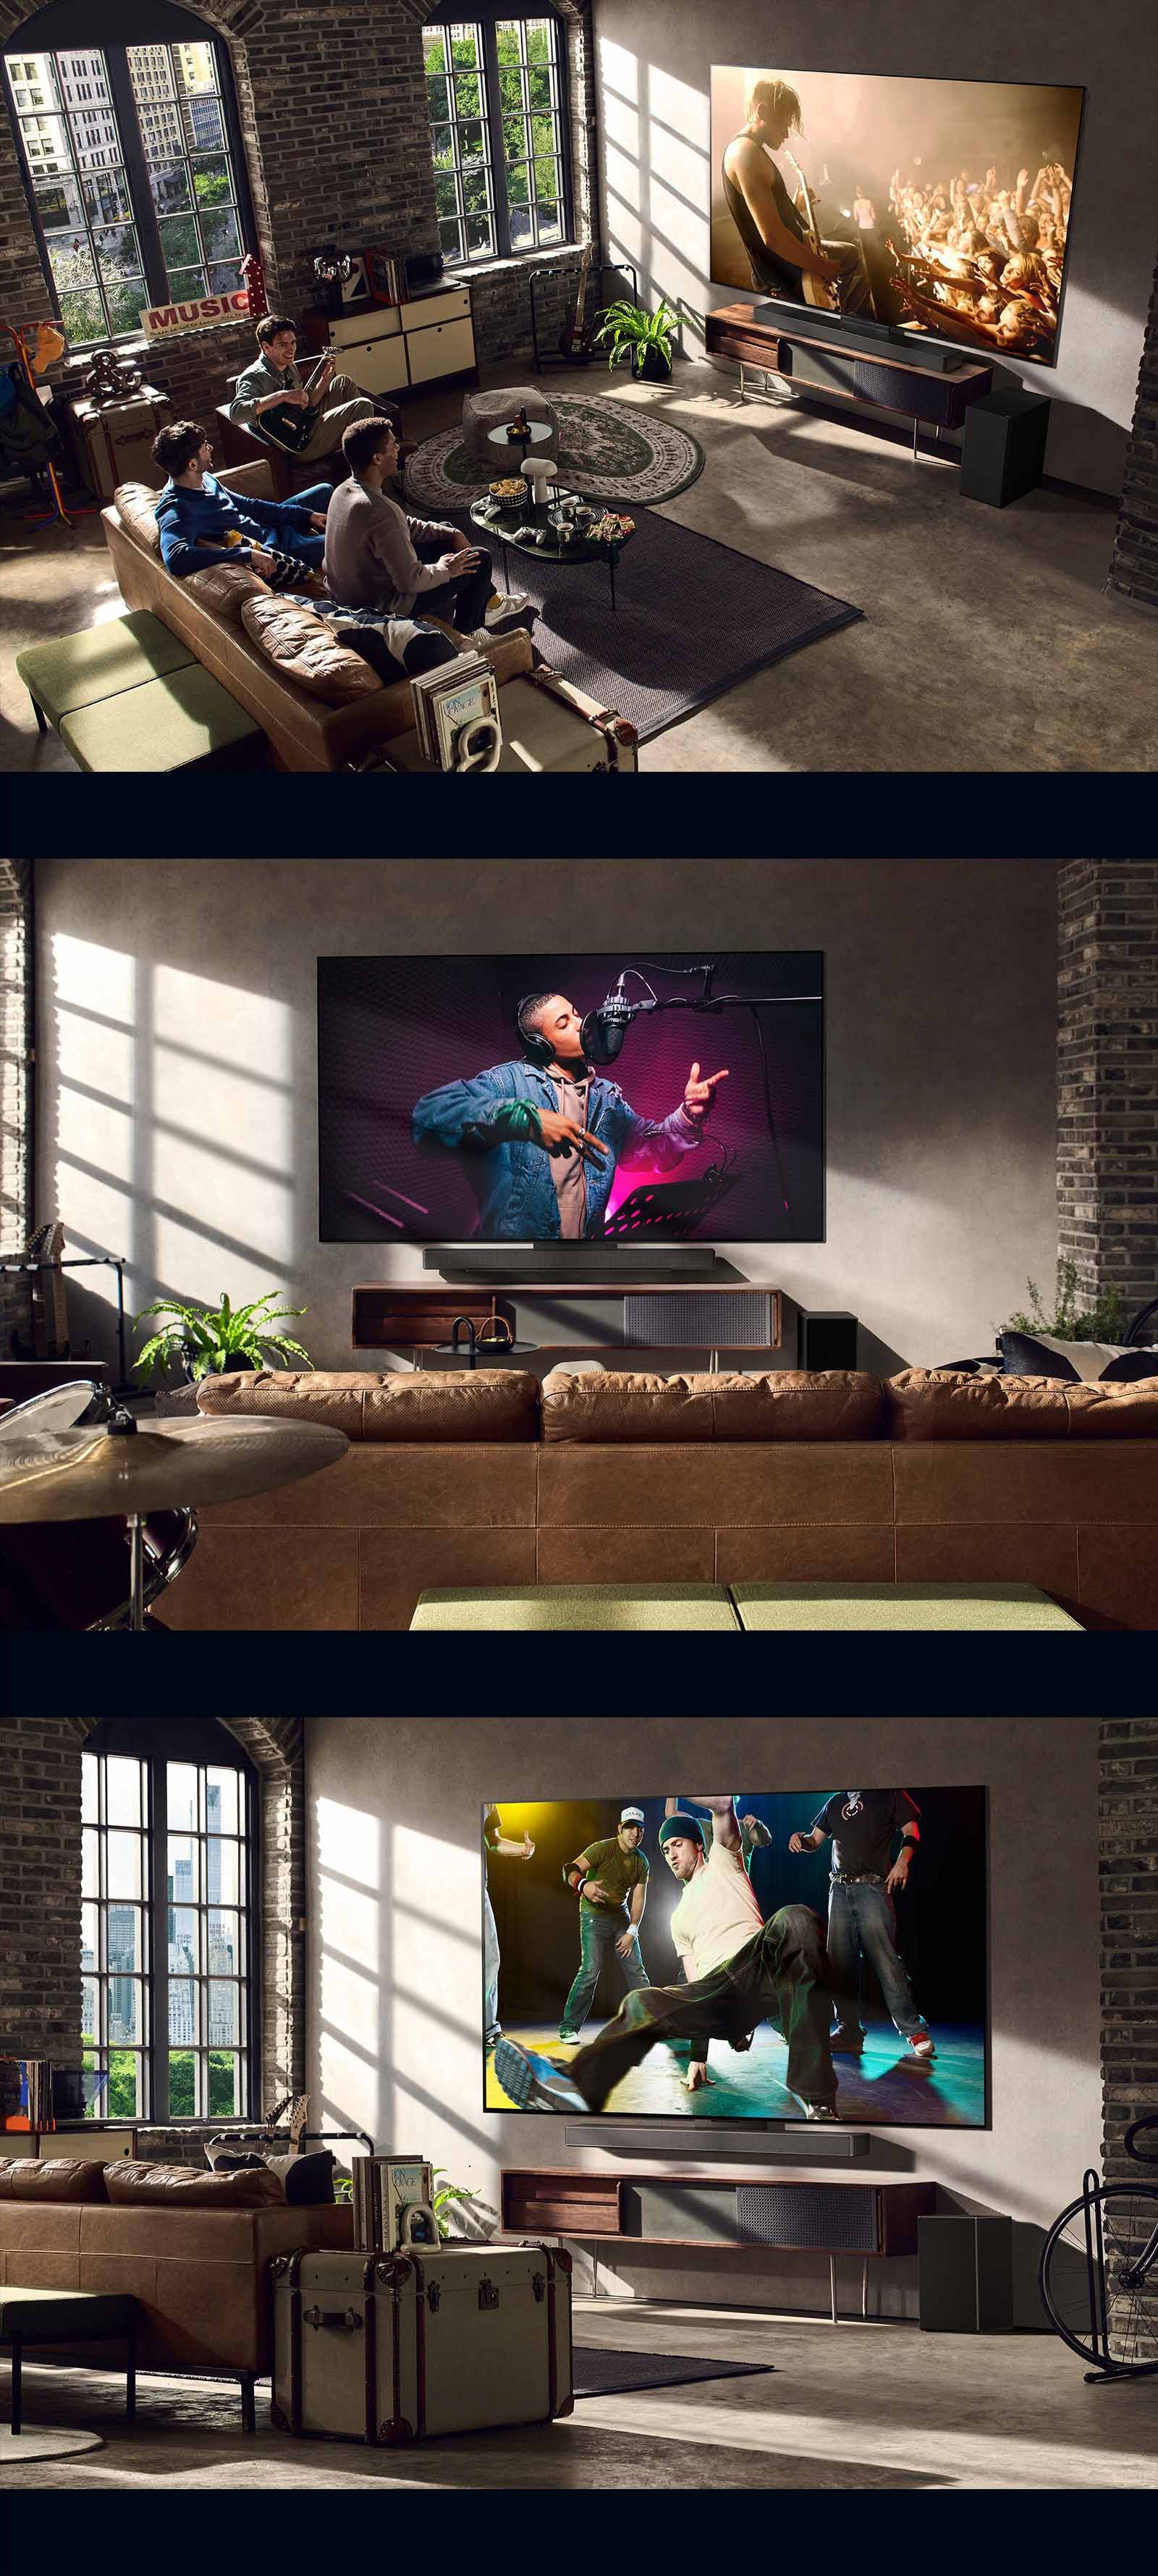 Postoje tri slike životnog stila. Od vrha nadole: tri muškarca uživaju u video snimku koncerta u dnevnoj prostoriji. LG TV se nalazi na zidu i prikazuje scenu muzičkog snimka, a LG TV na zidu prikazuje scenu brejk densa u dijagonalnom prikazu.